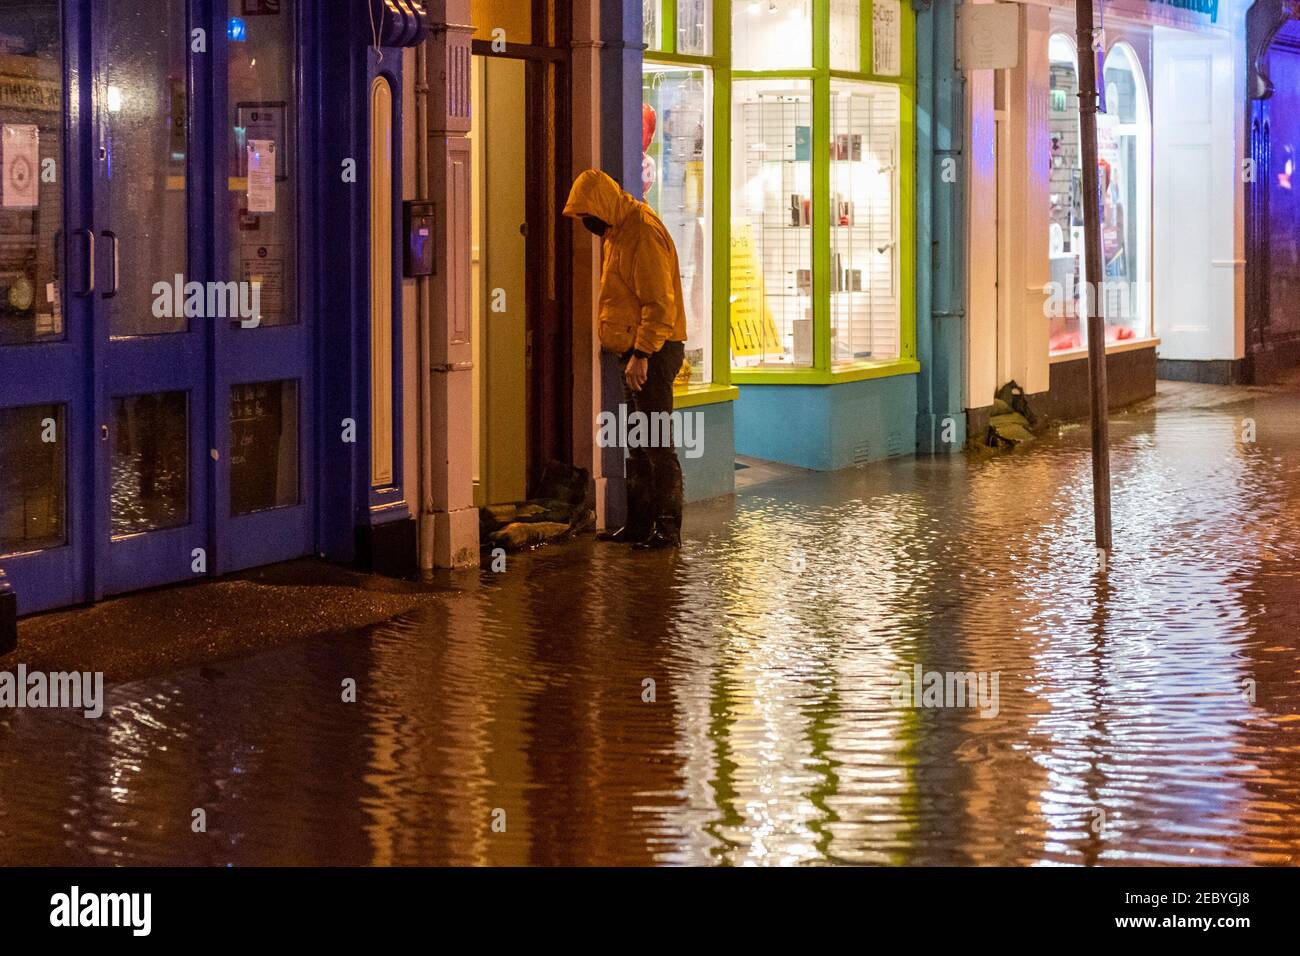 Bantry, West Cork, Irland. Februar 2021, 13th. Der Stadtplatz von Bantry überflutete heute Morgen wieder, wegen der hohen astronomischen Frühlingsgezeiten. Drei Einheiten der Bantry Fire Brigade unterstützten die Mitarbeiter des County Cork bei der Abpumpen des Hochwassers von Grundstücken, obwohl eine kleine Anzahl von Gebäuden von Hochwasser betroffen war. Quelle: AG News/Alamy Live News Stockfoto